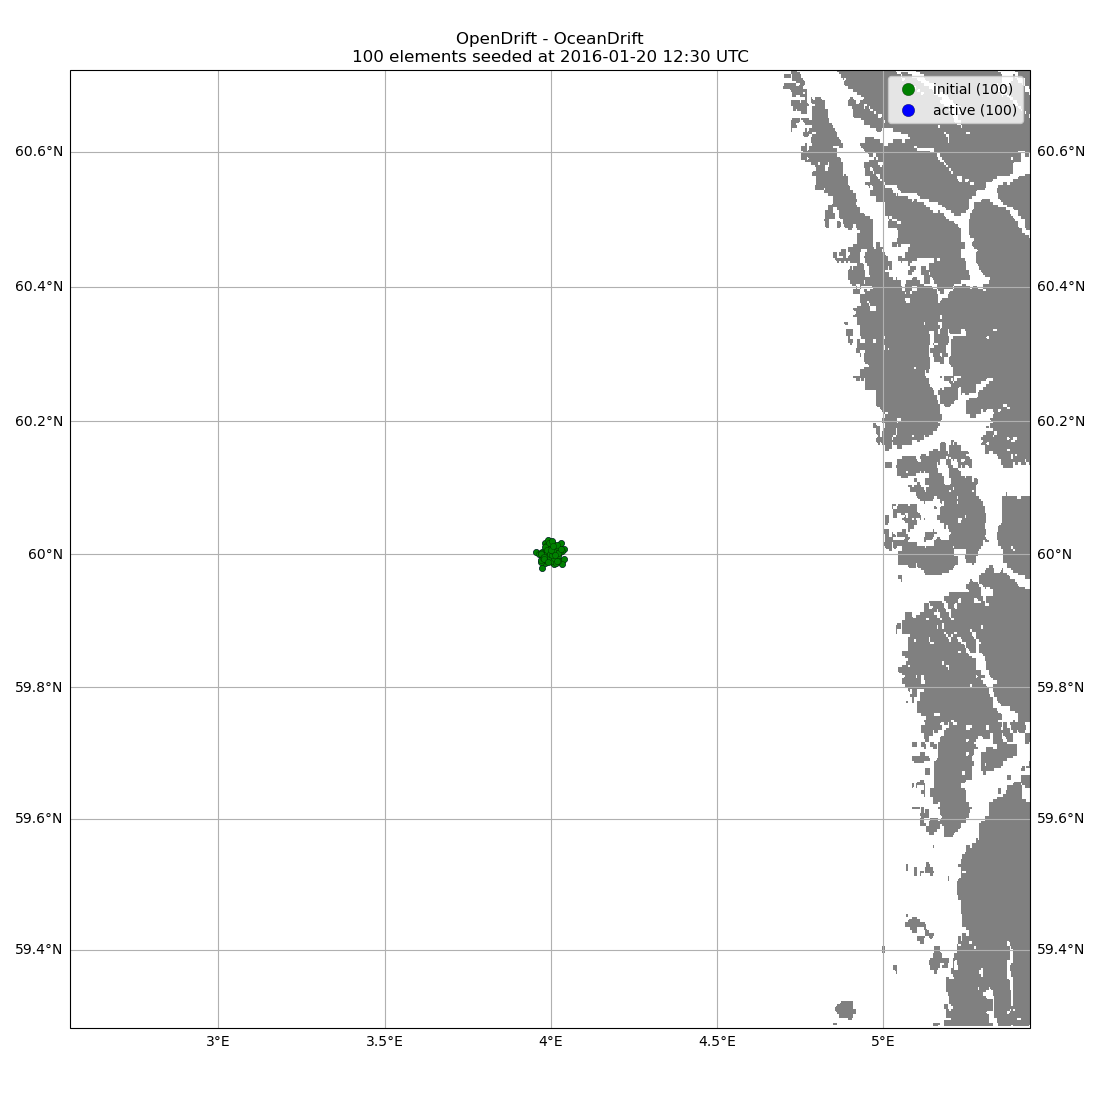 OpenDrift - OceanDrift 100 elements seeded at 2016-01-20 12:30 UTC